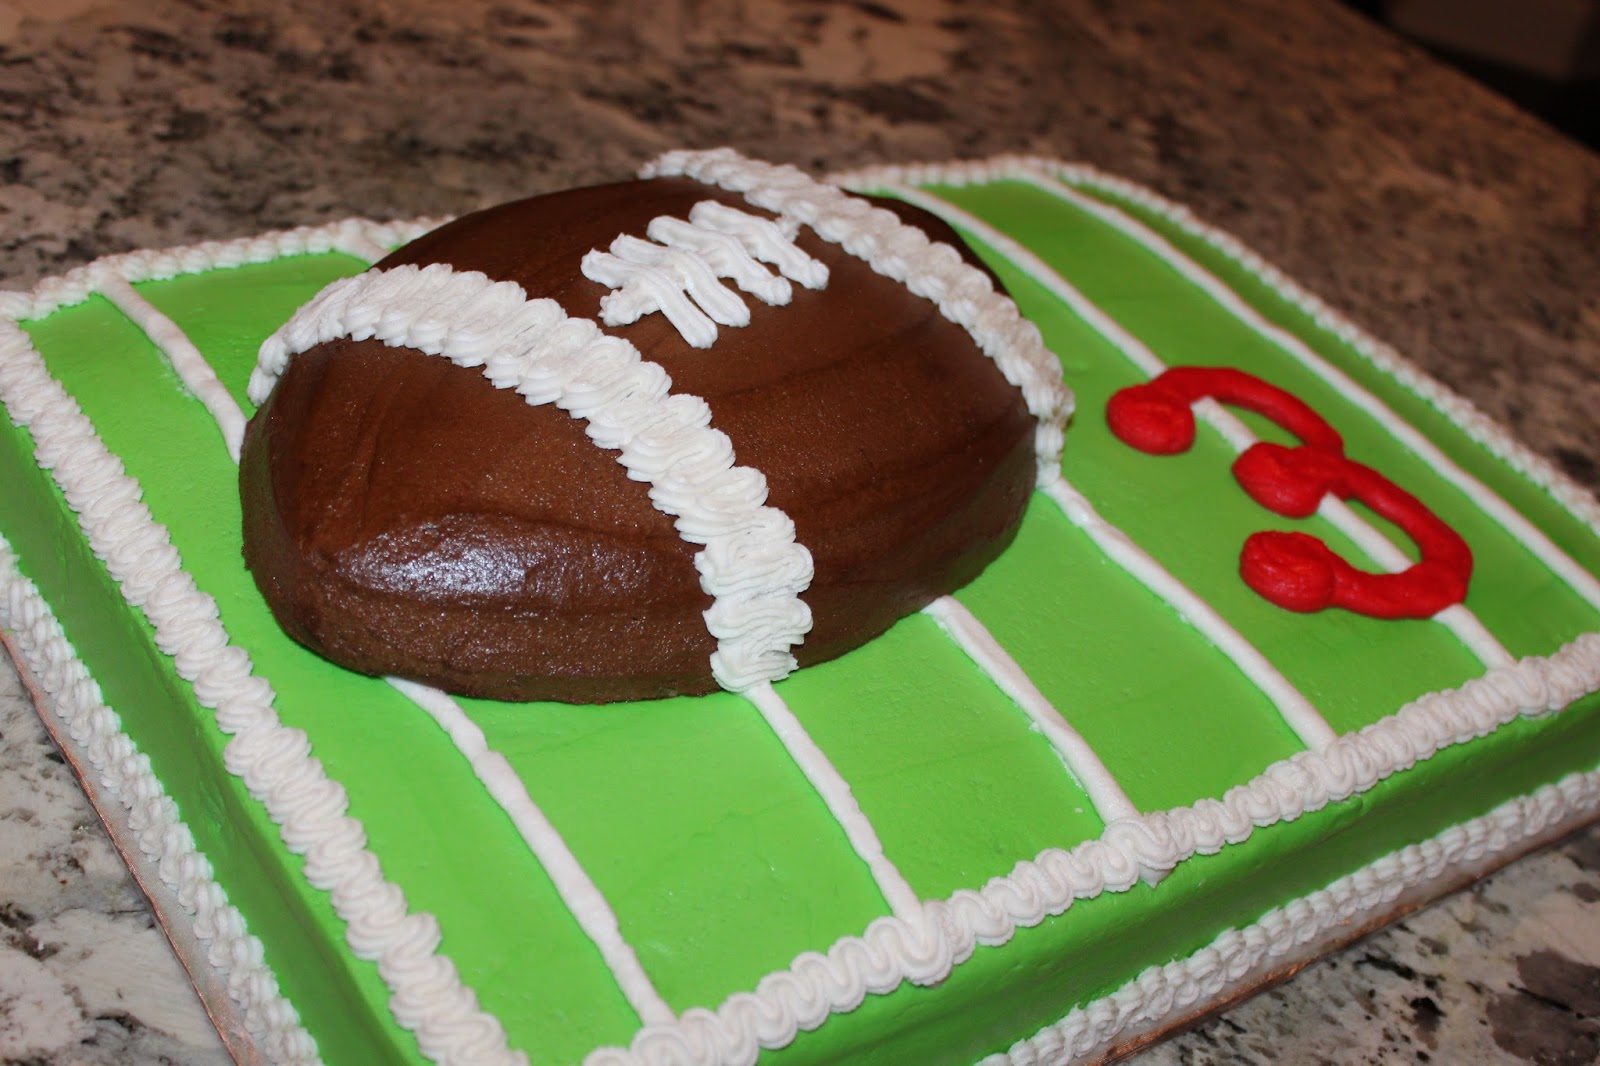 Easy to Make Chocolate Football Cake recipe